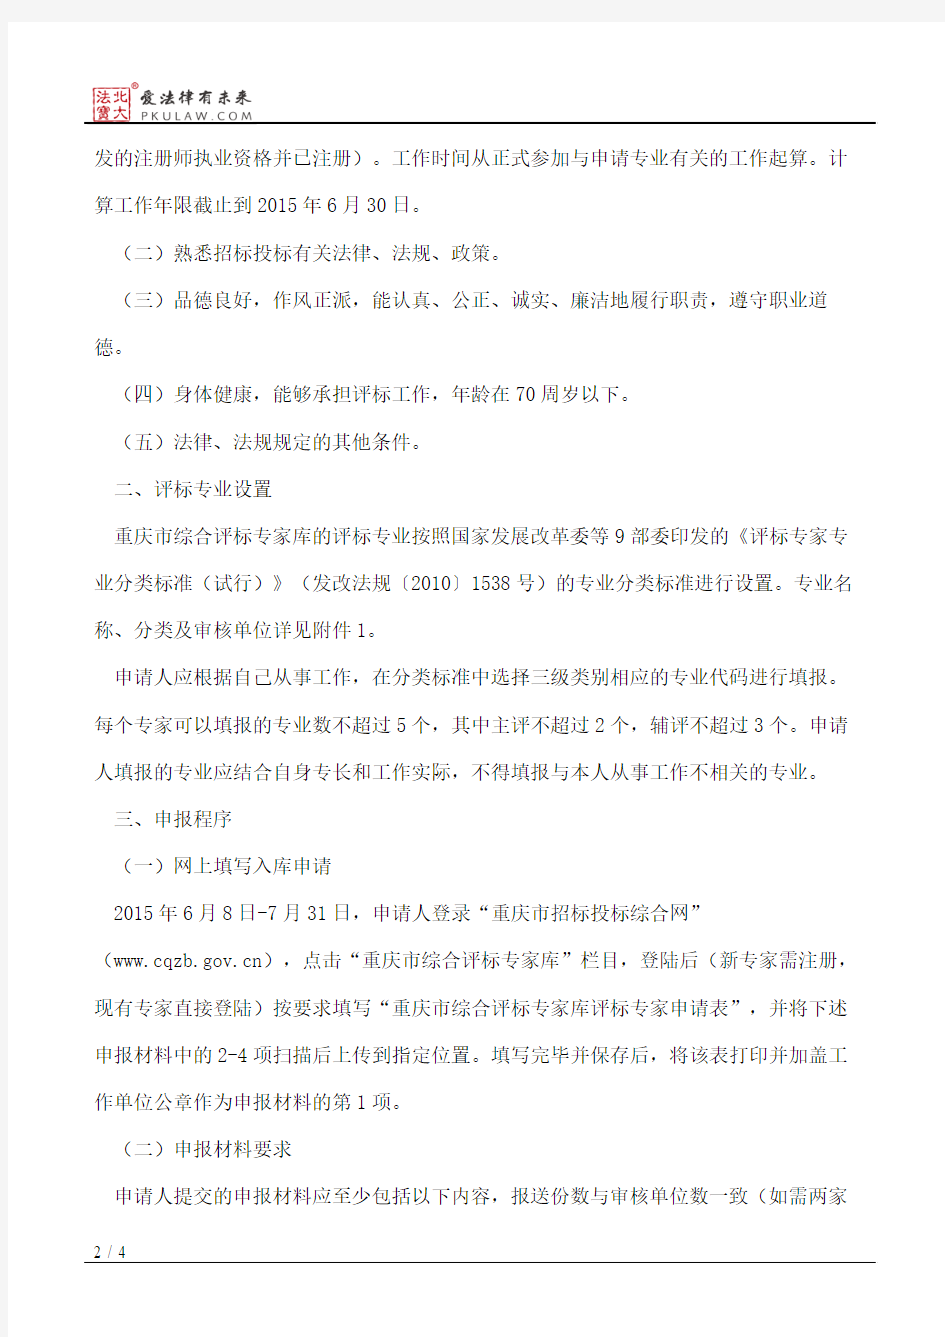 重庆市发展和改革委员会关于征集重庆市综合评标专家库评标专家的通知